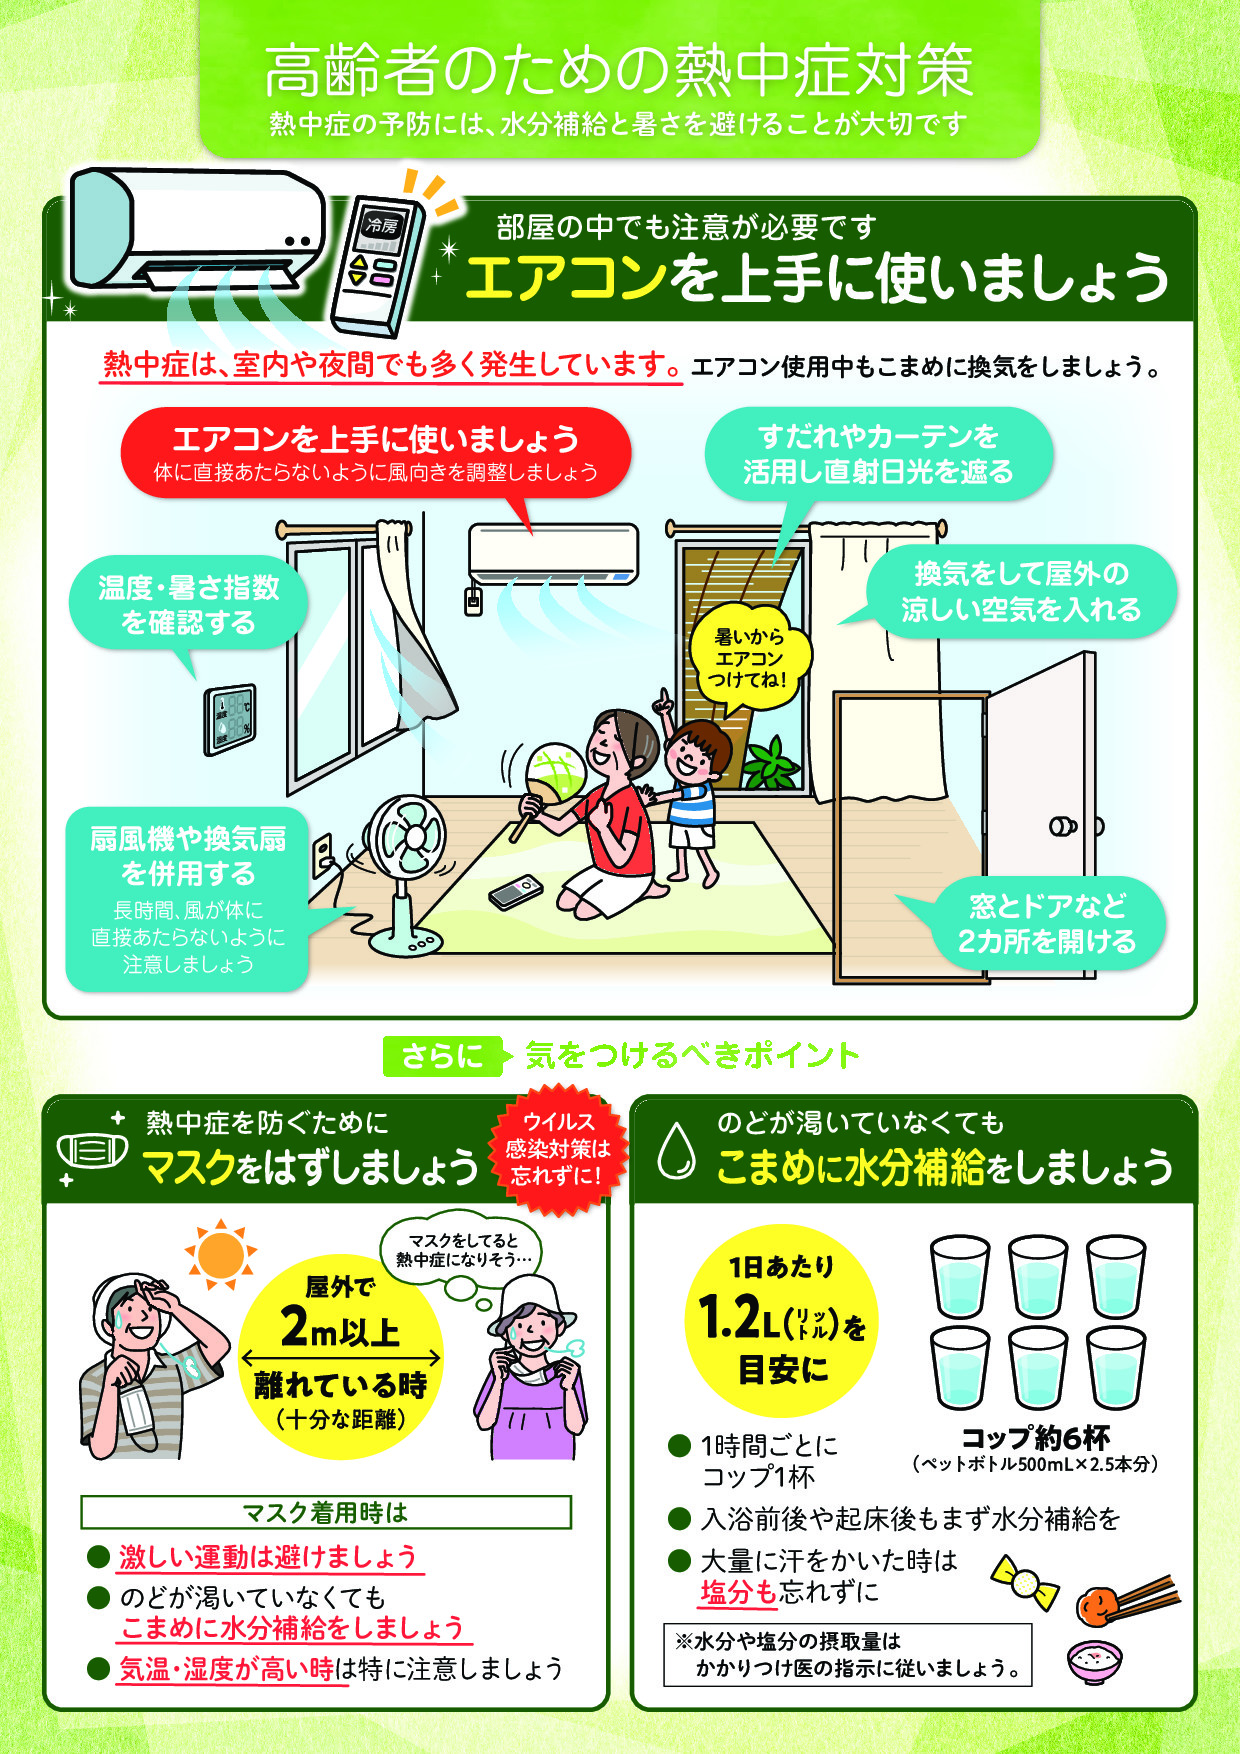 高齢者のための熱中症対策(1)